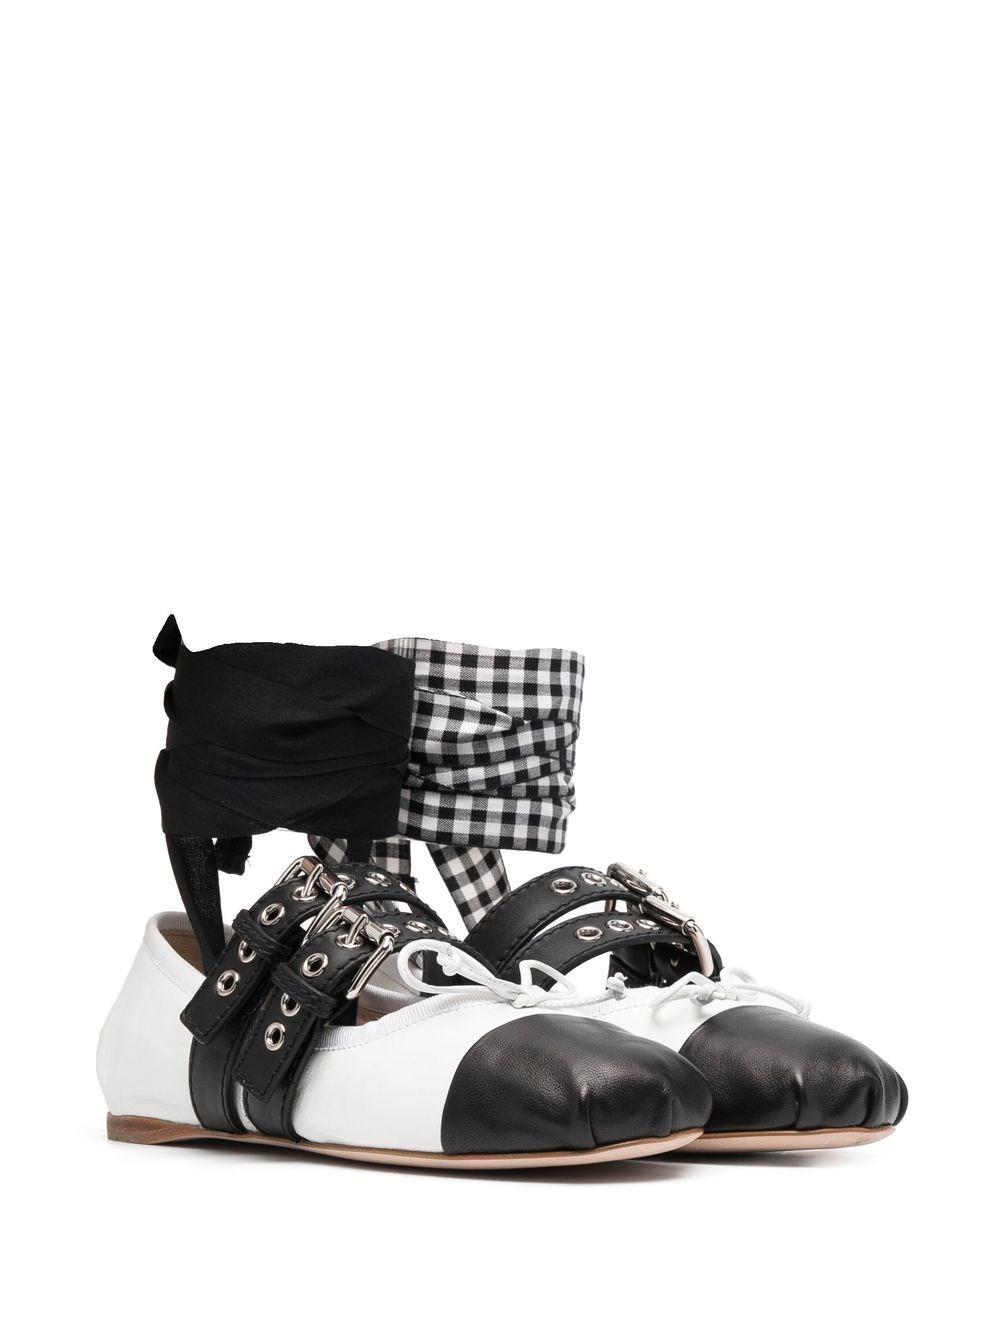 Miu Miu Ankle Tie-fastening Buckle Ballerina Shoes in Black | Lyst